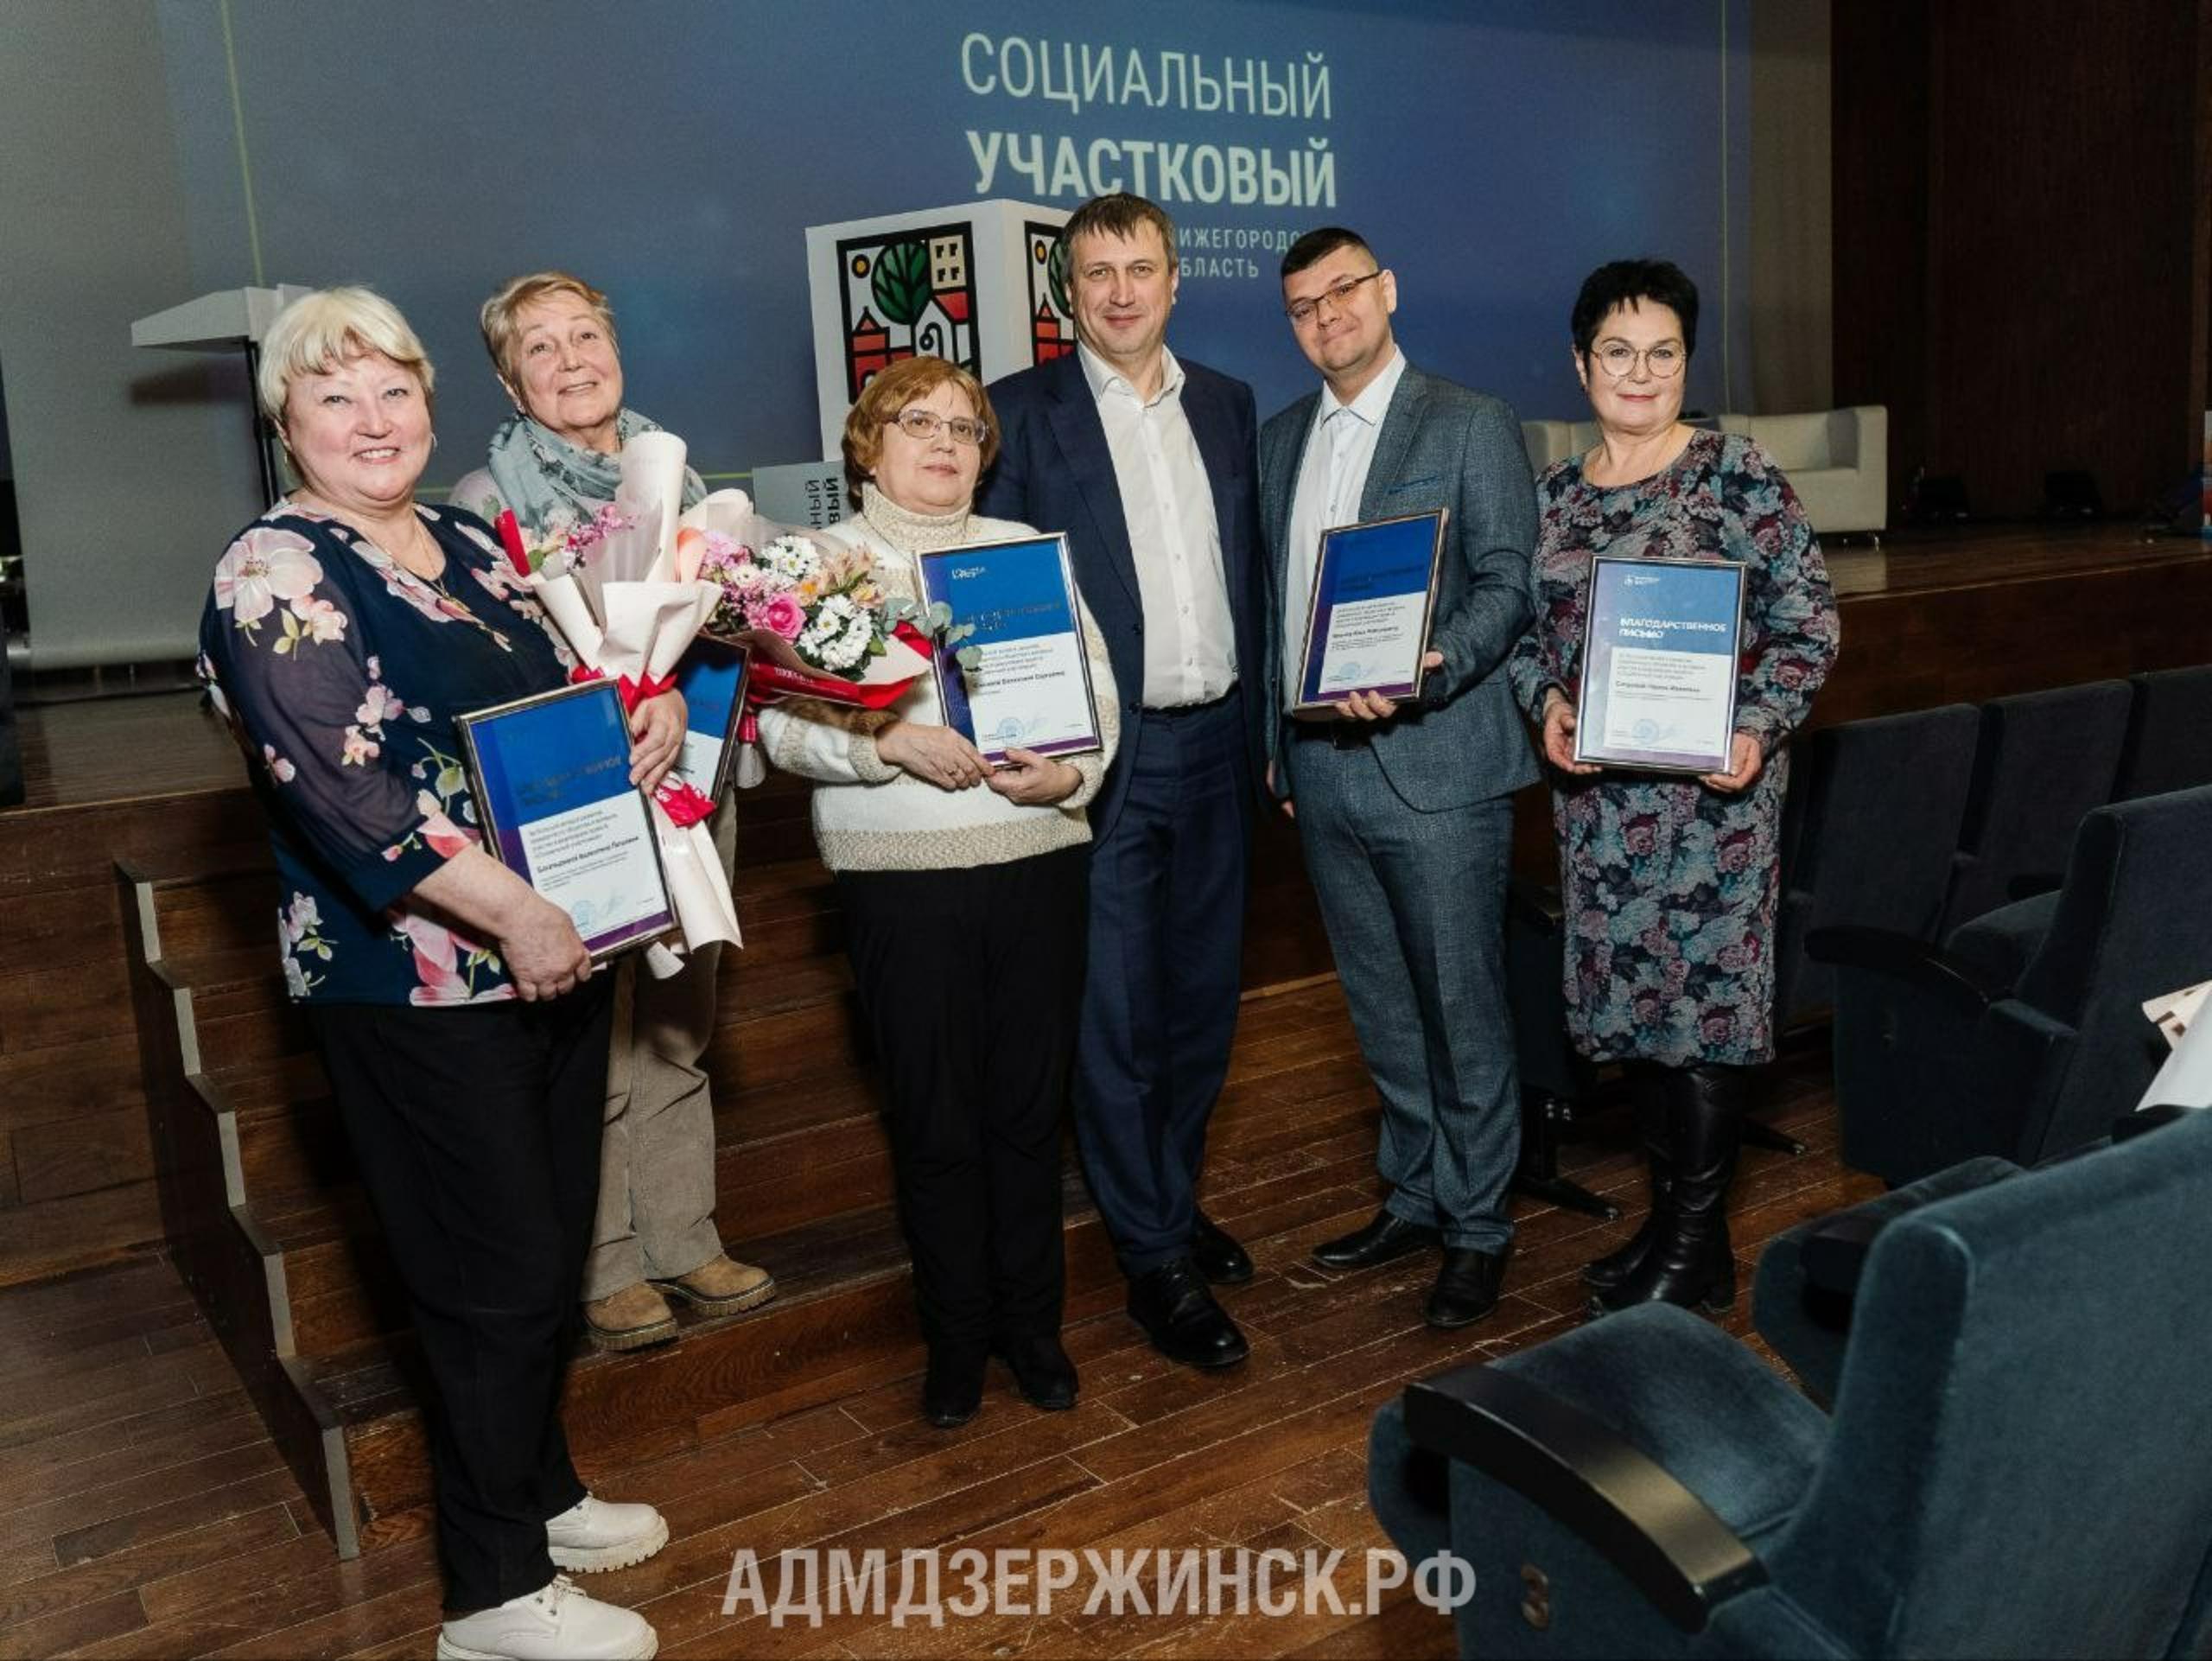 Иван Носков: «Социальные участковые – это локомотивы развития районов Дзержинска»